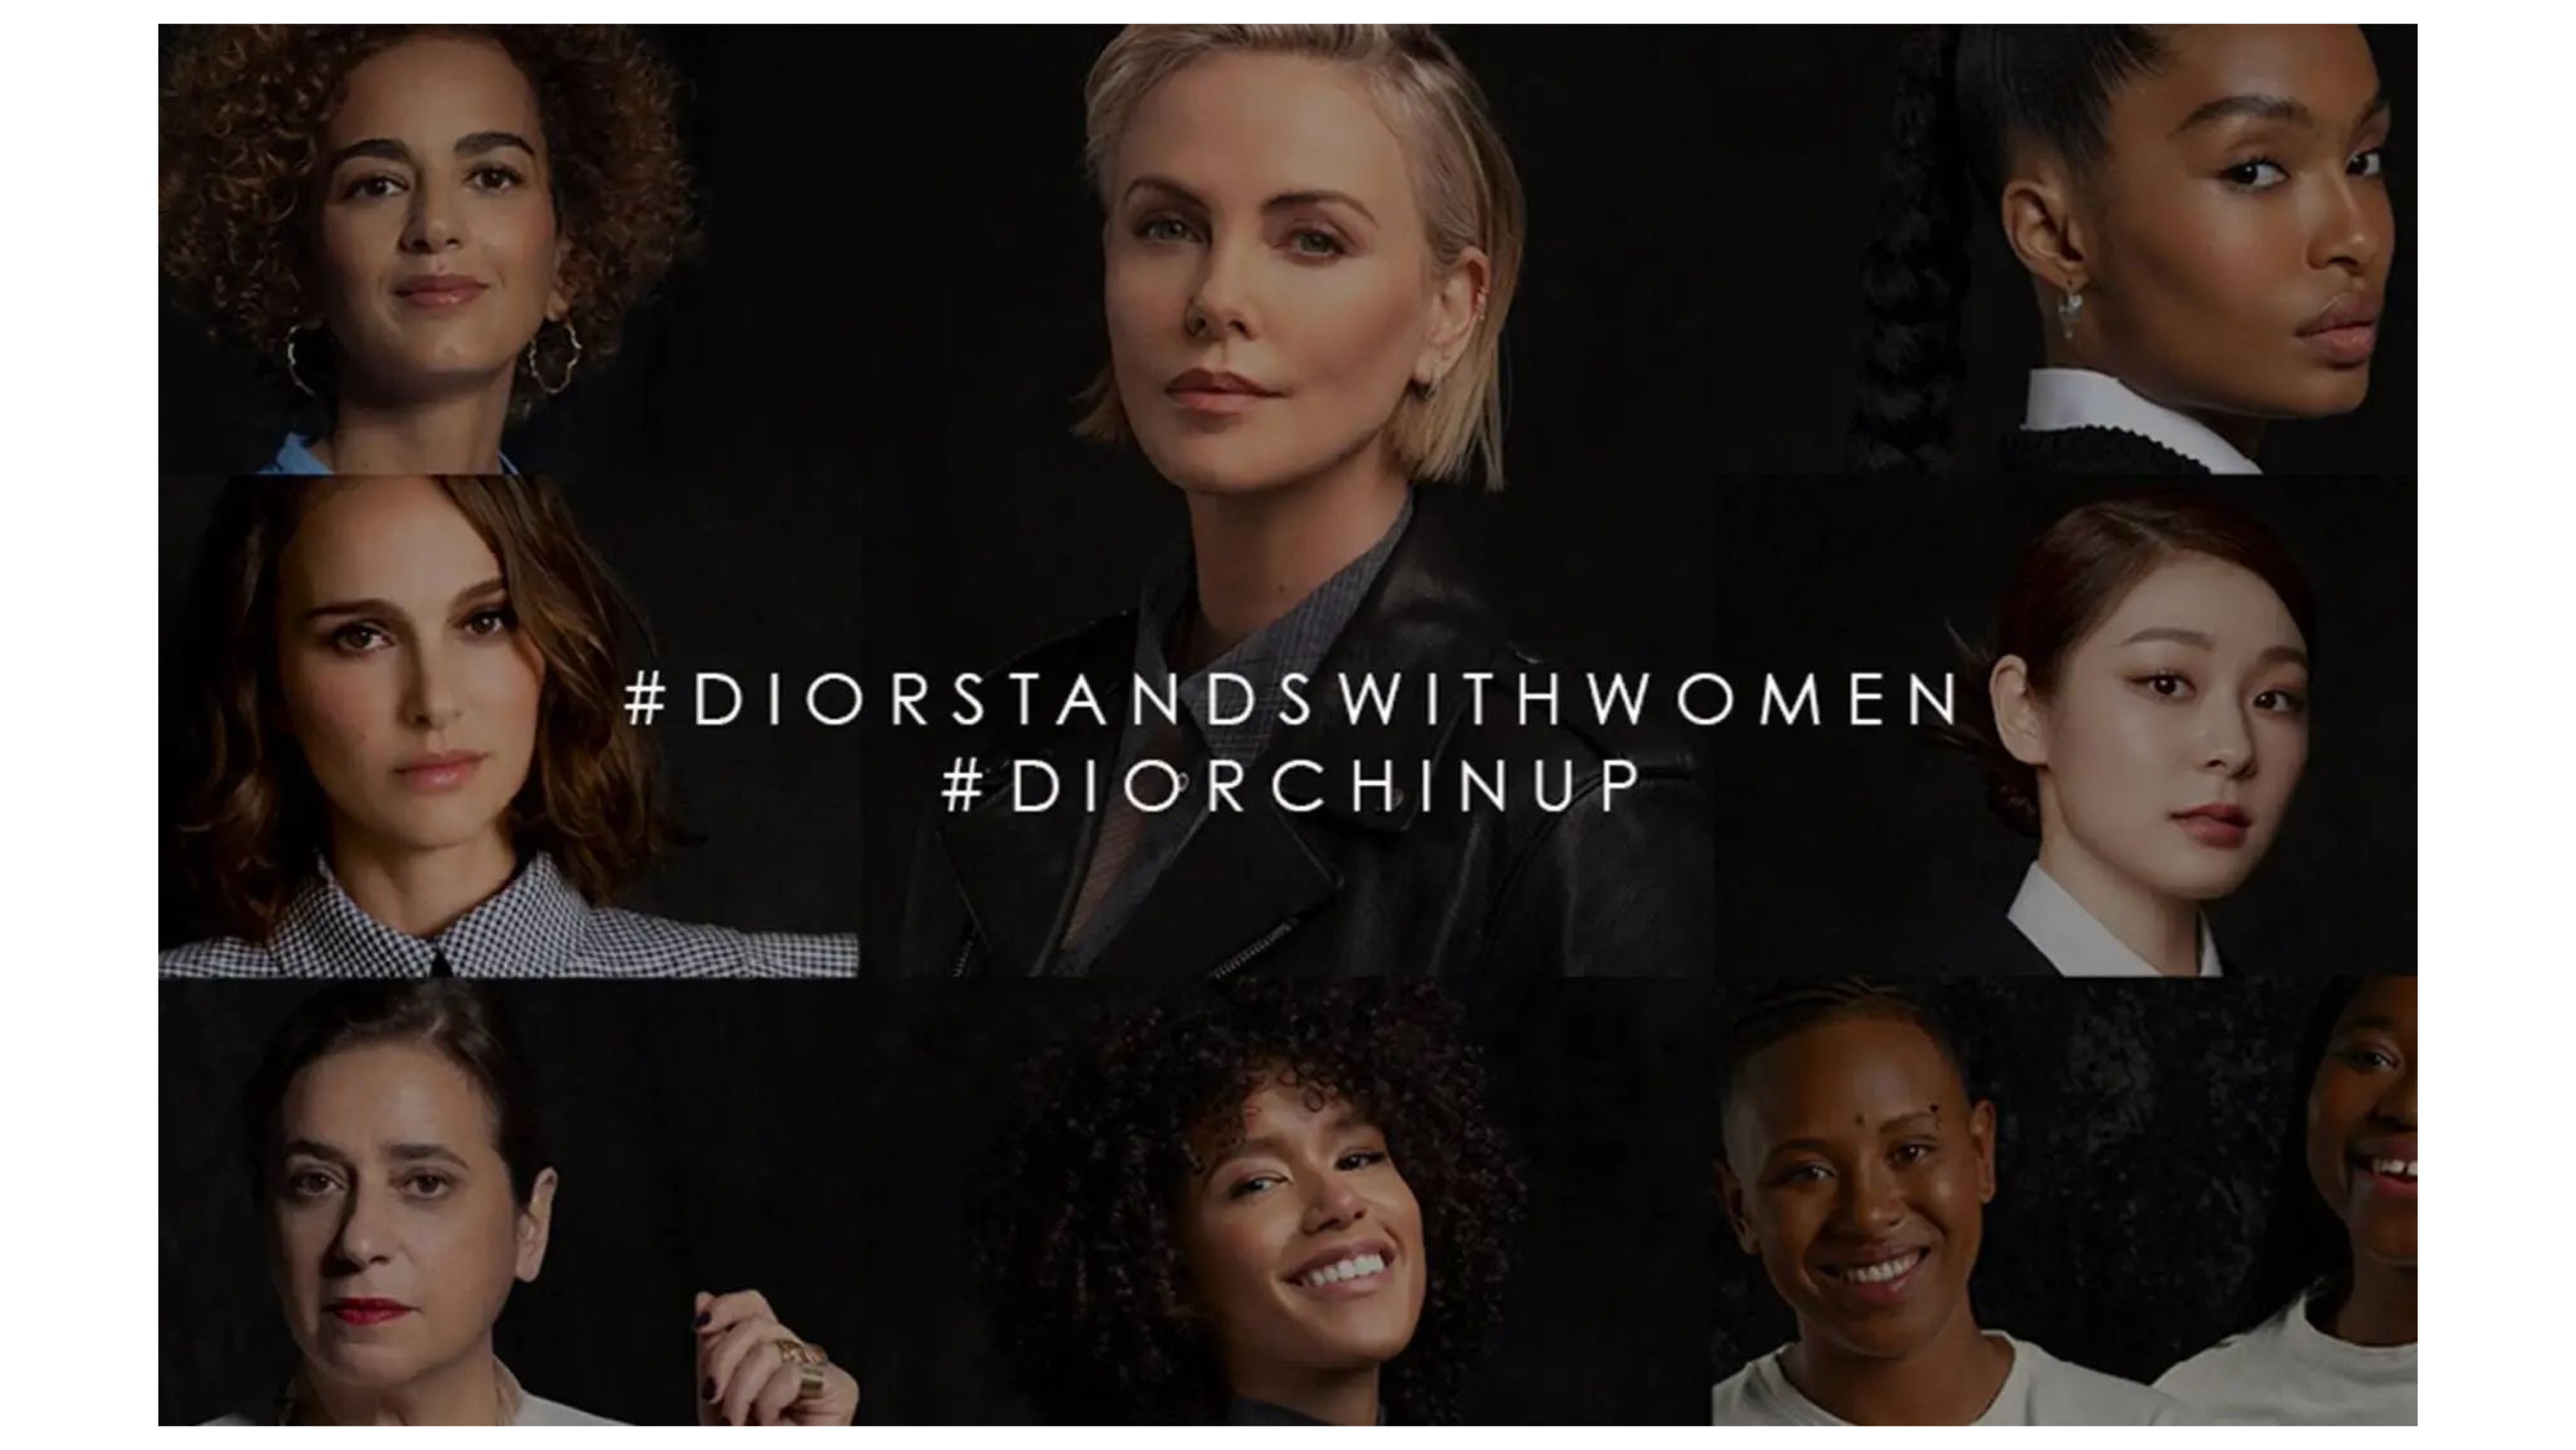 Dior запустили серию фильмов о женщинах вместе с актрисой Натали Портман (и не только!)